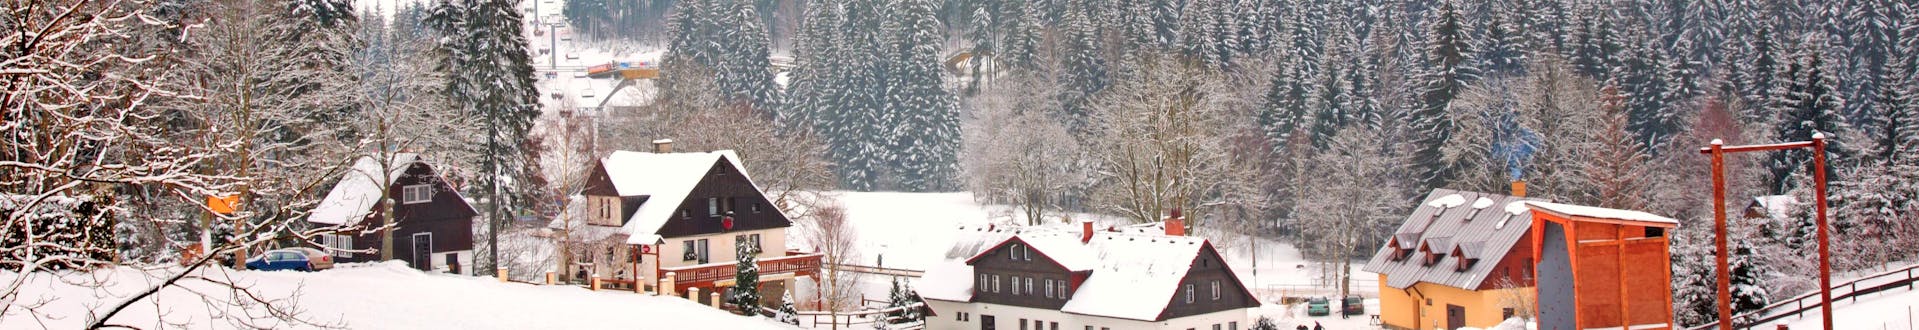 Image of a small town in Certova Hora - Harrachov in Czech Republic in winter